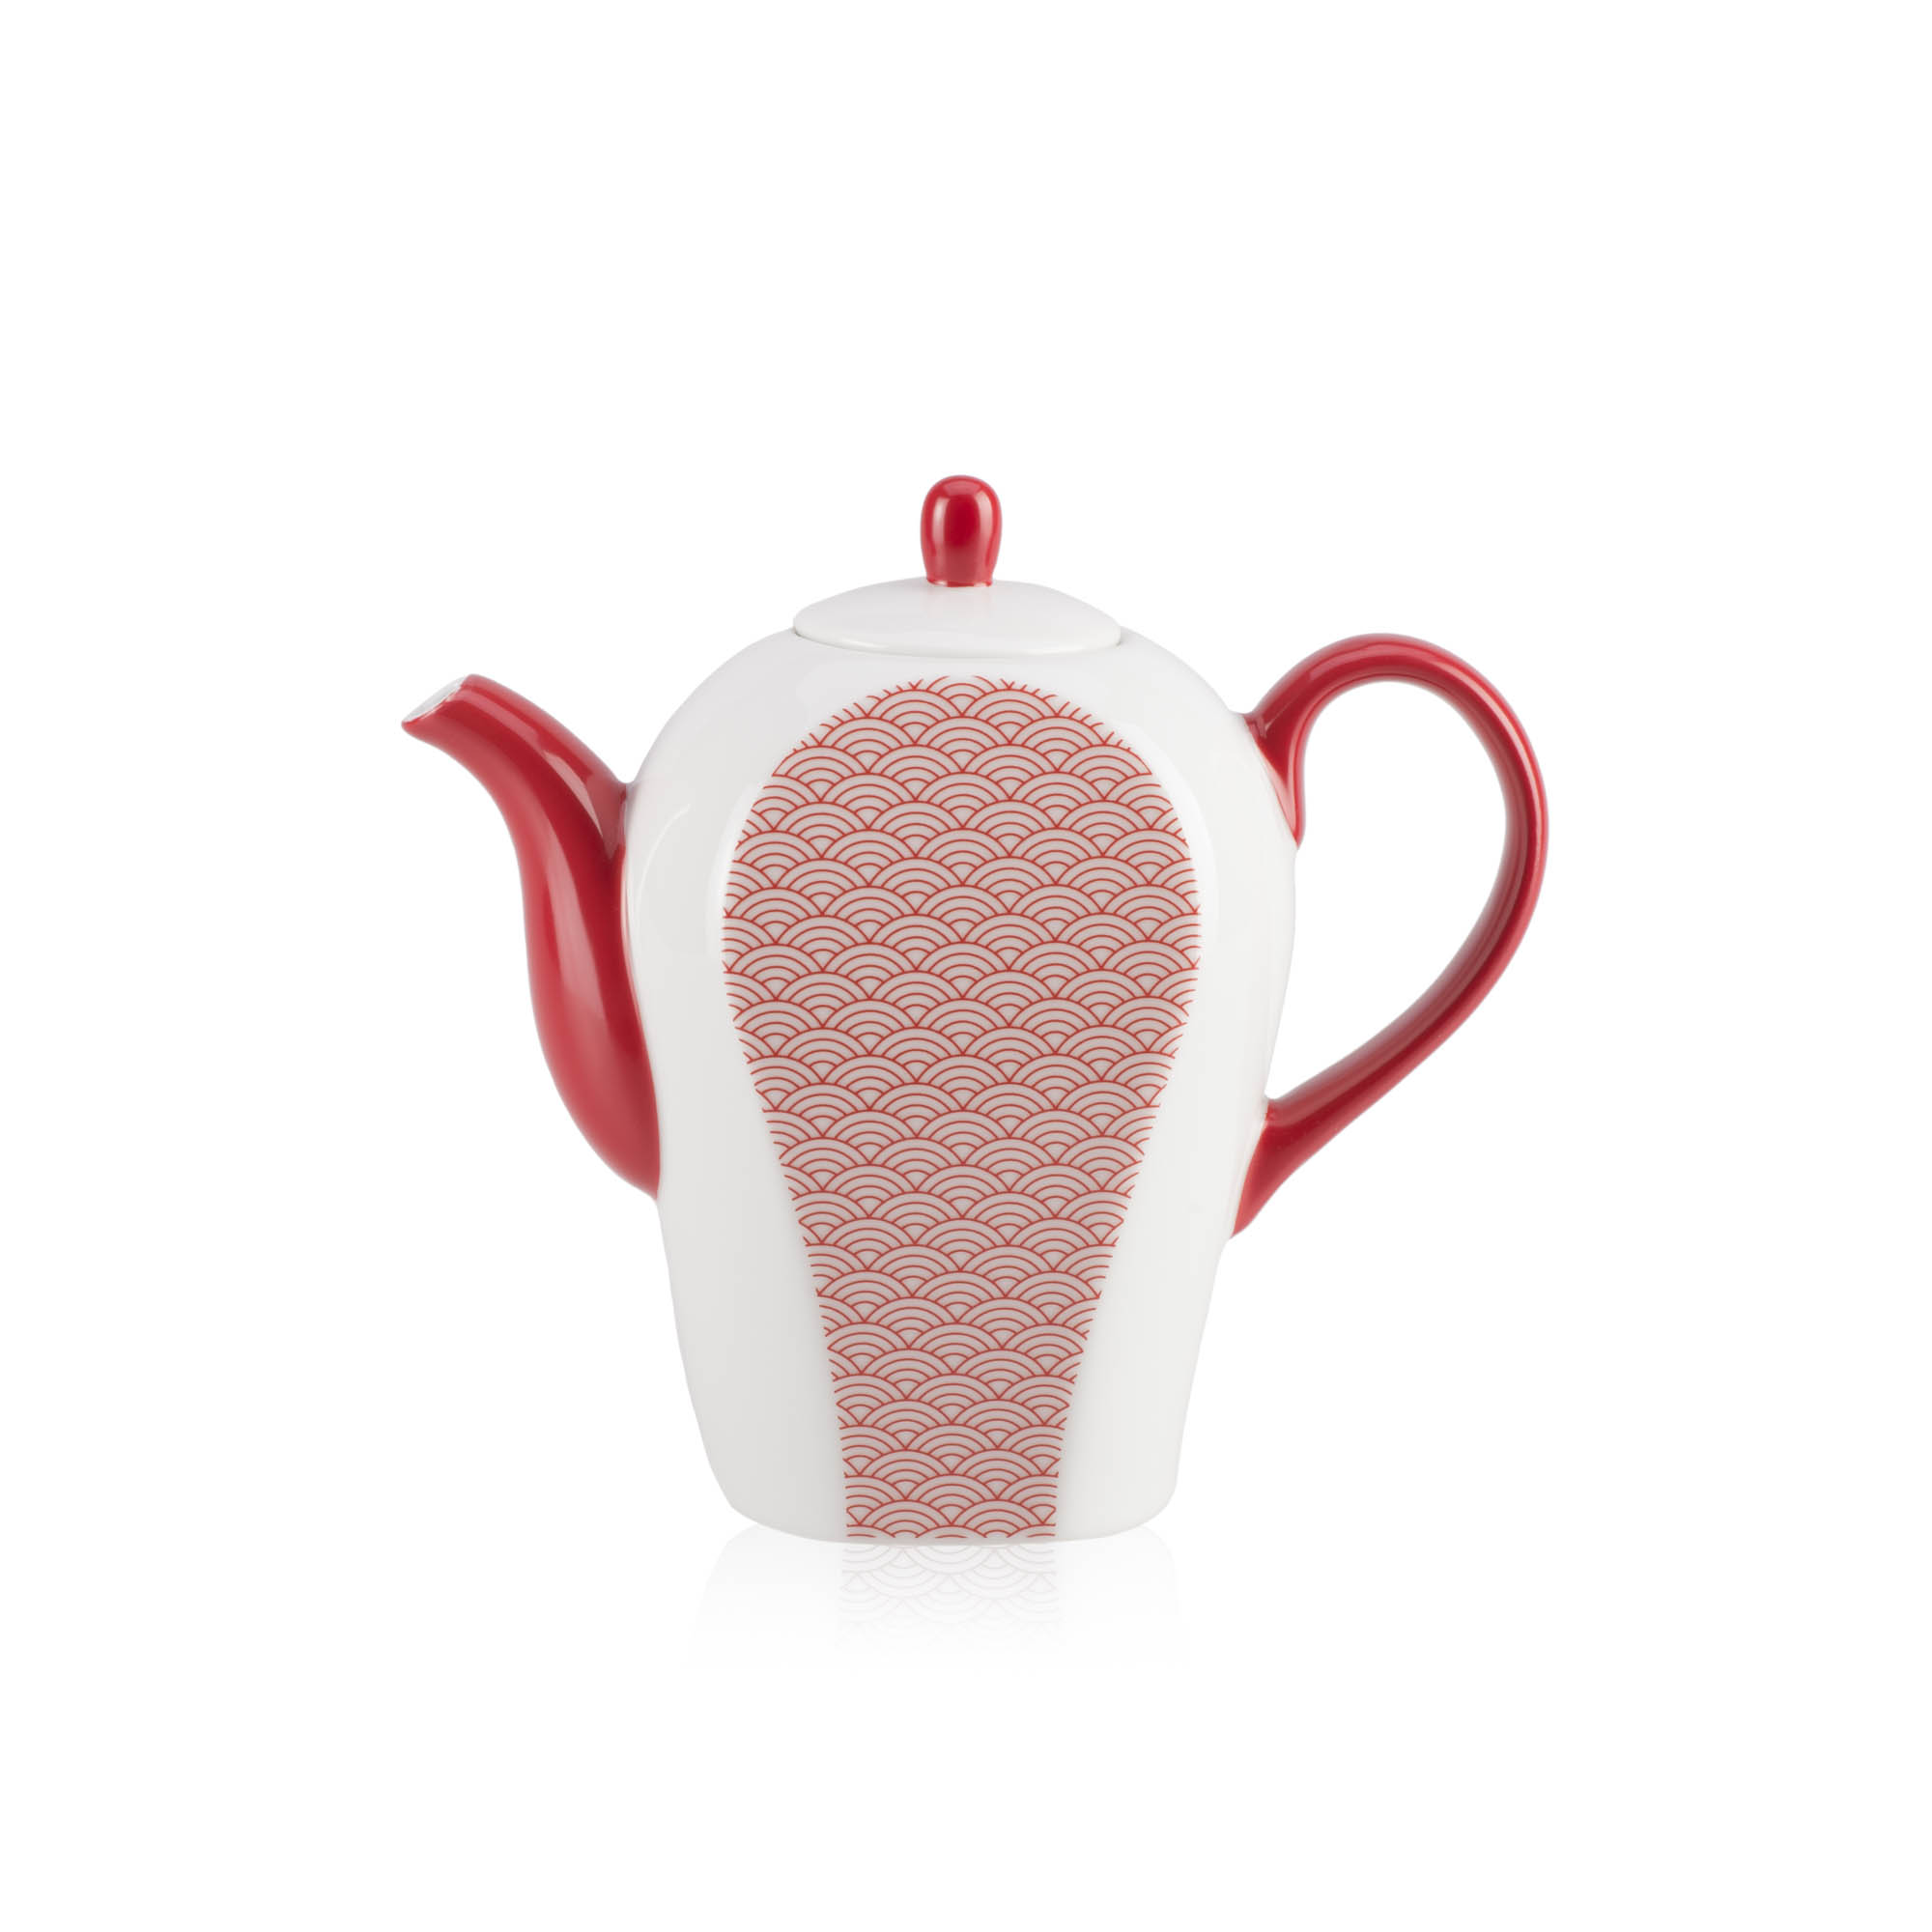 Dammann Auteuil Teekanne aus Porzellan mit rotem Muster